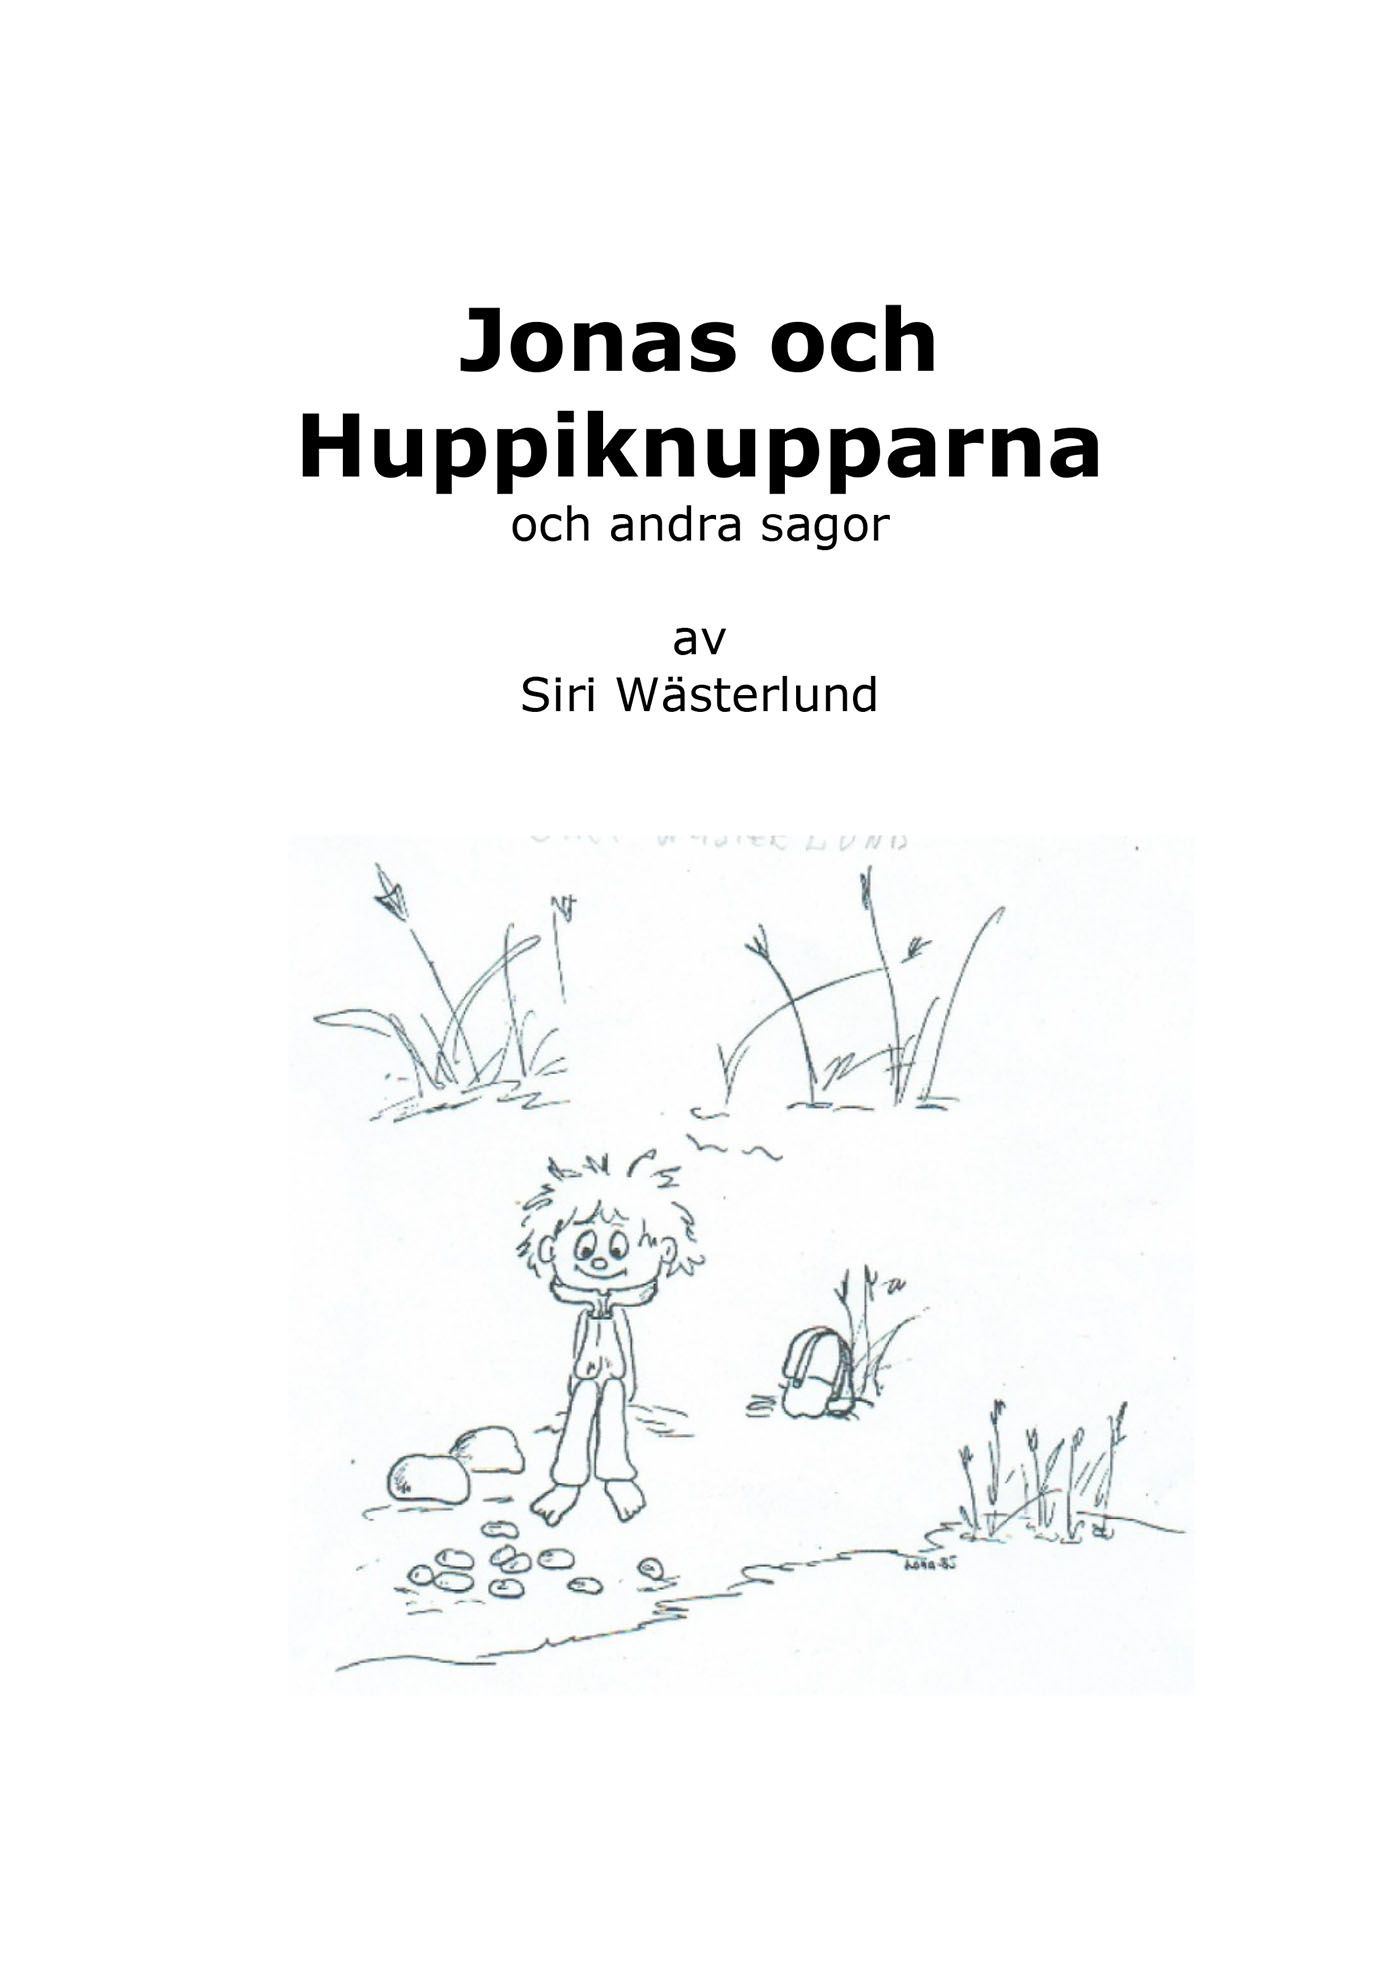 Jonas och Huppiknupparna och andra sagor, e-bog af Siri Wästerlund